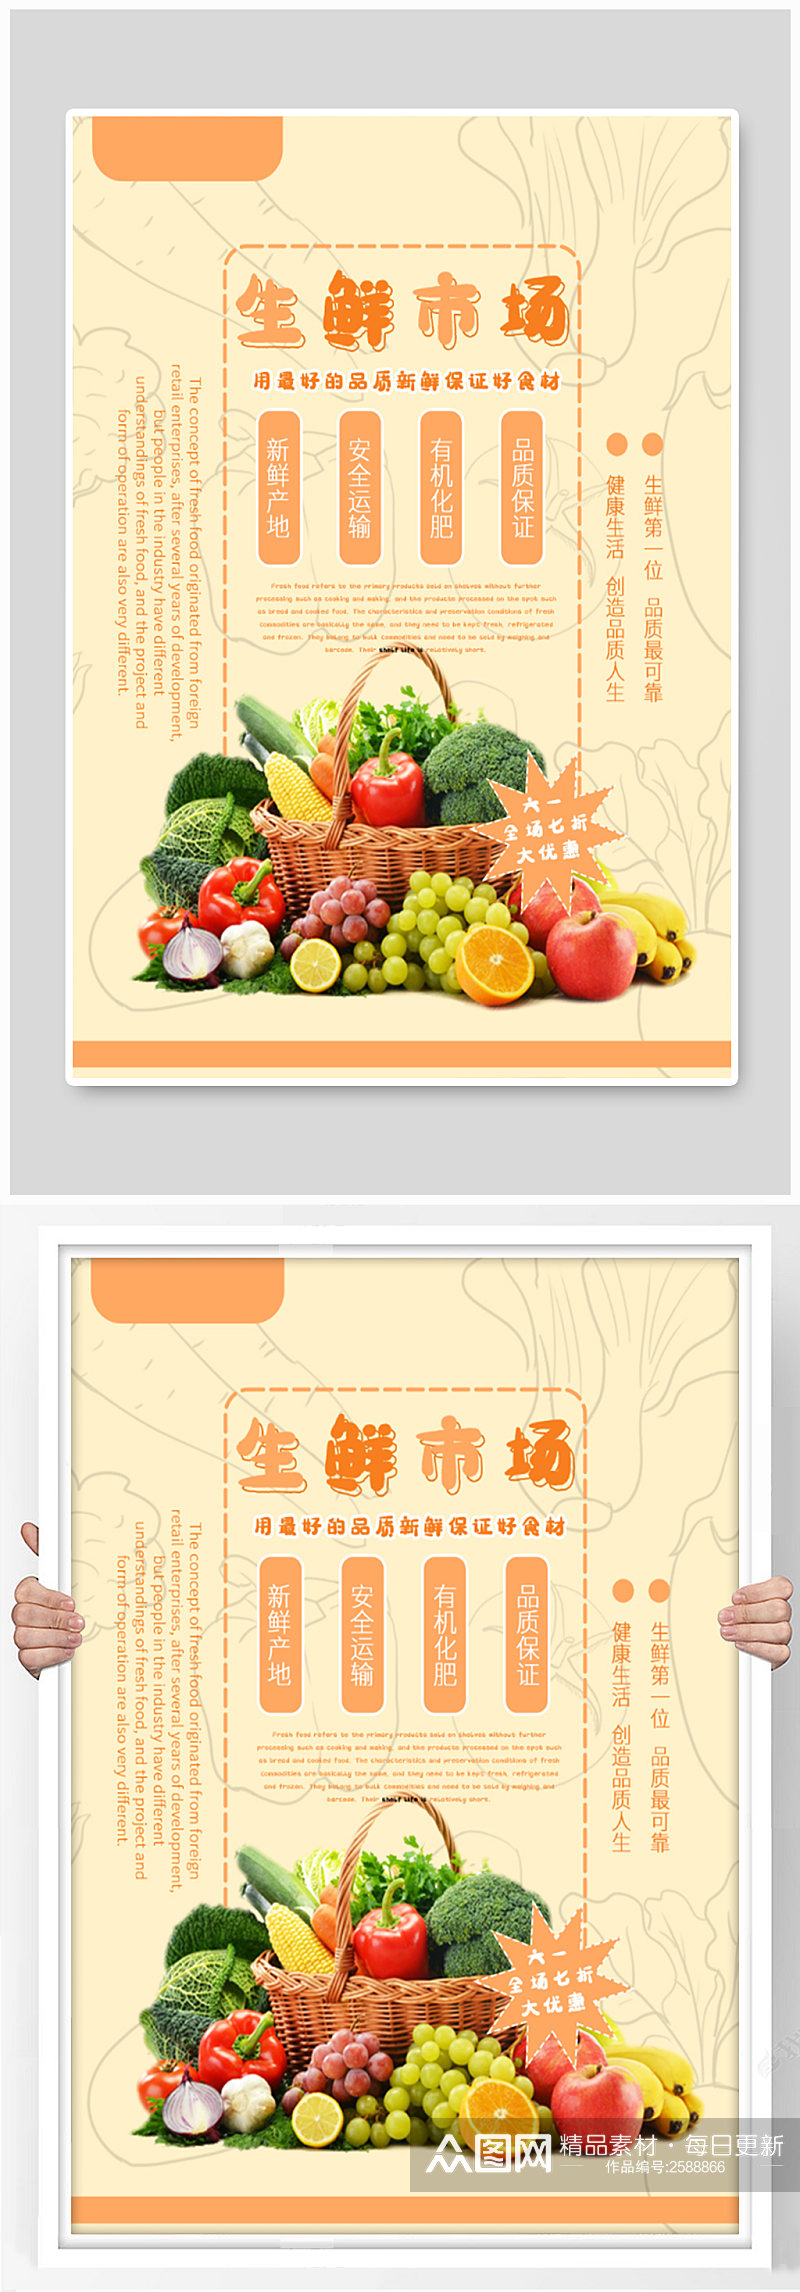 生鲜市场水果海报素材